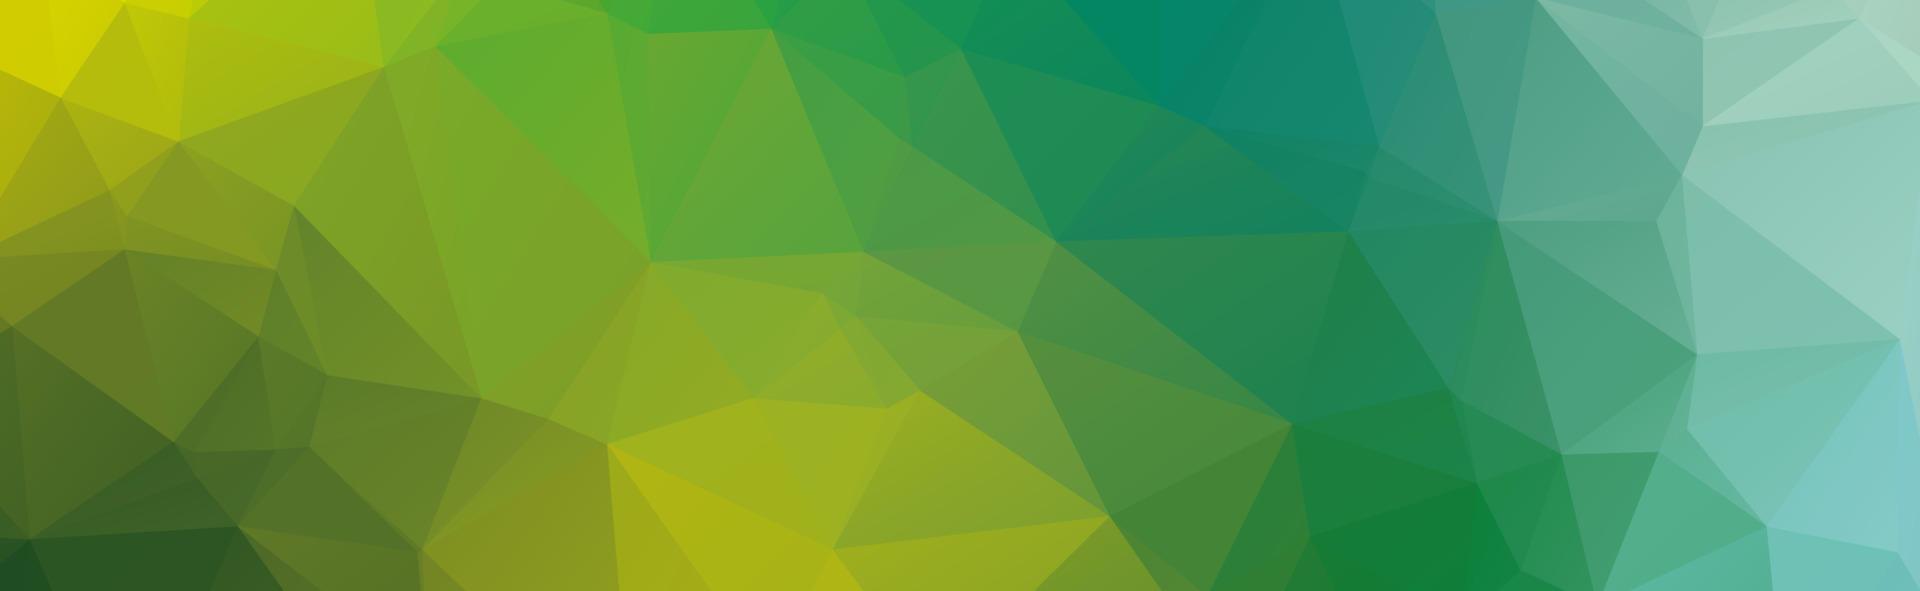 fundo de cristal poligonal verde. padrão de design do polígono. ilustração em vetor meio ambiente verde baixo poli e pano de fundo.